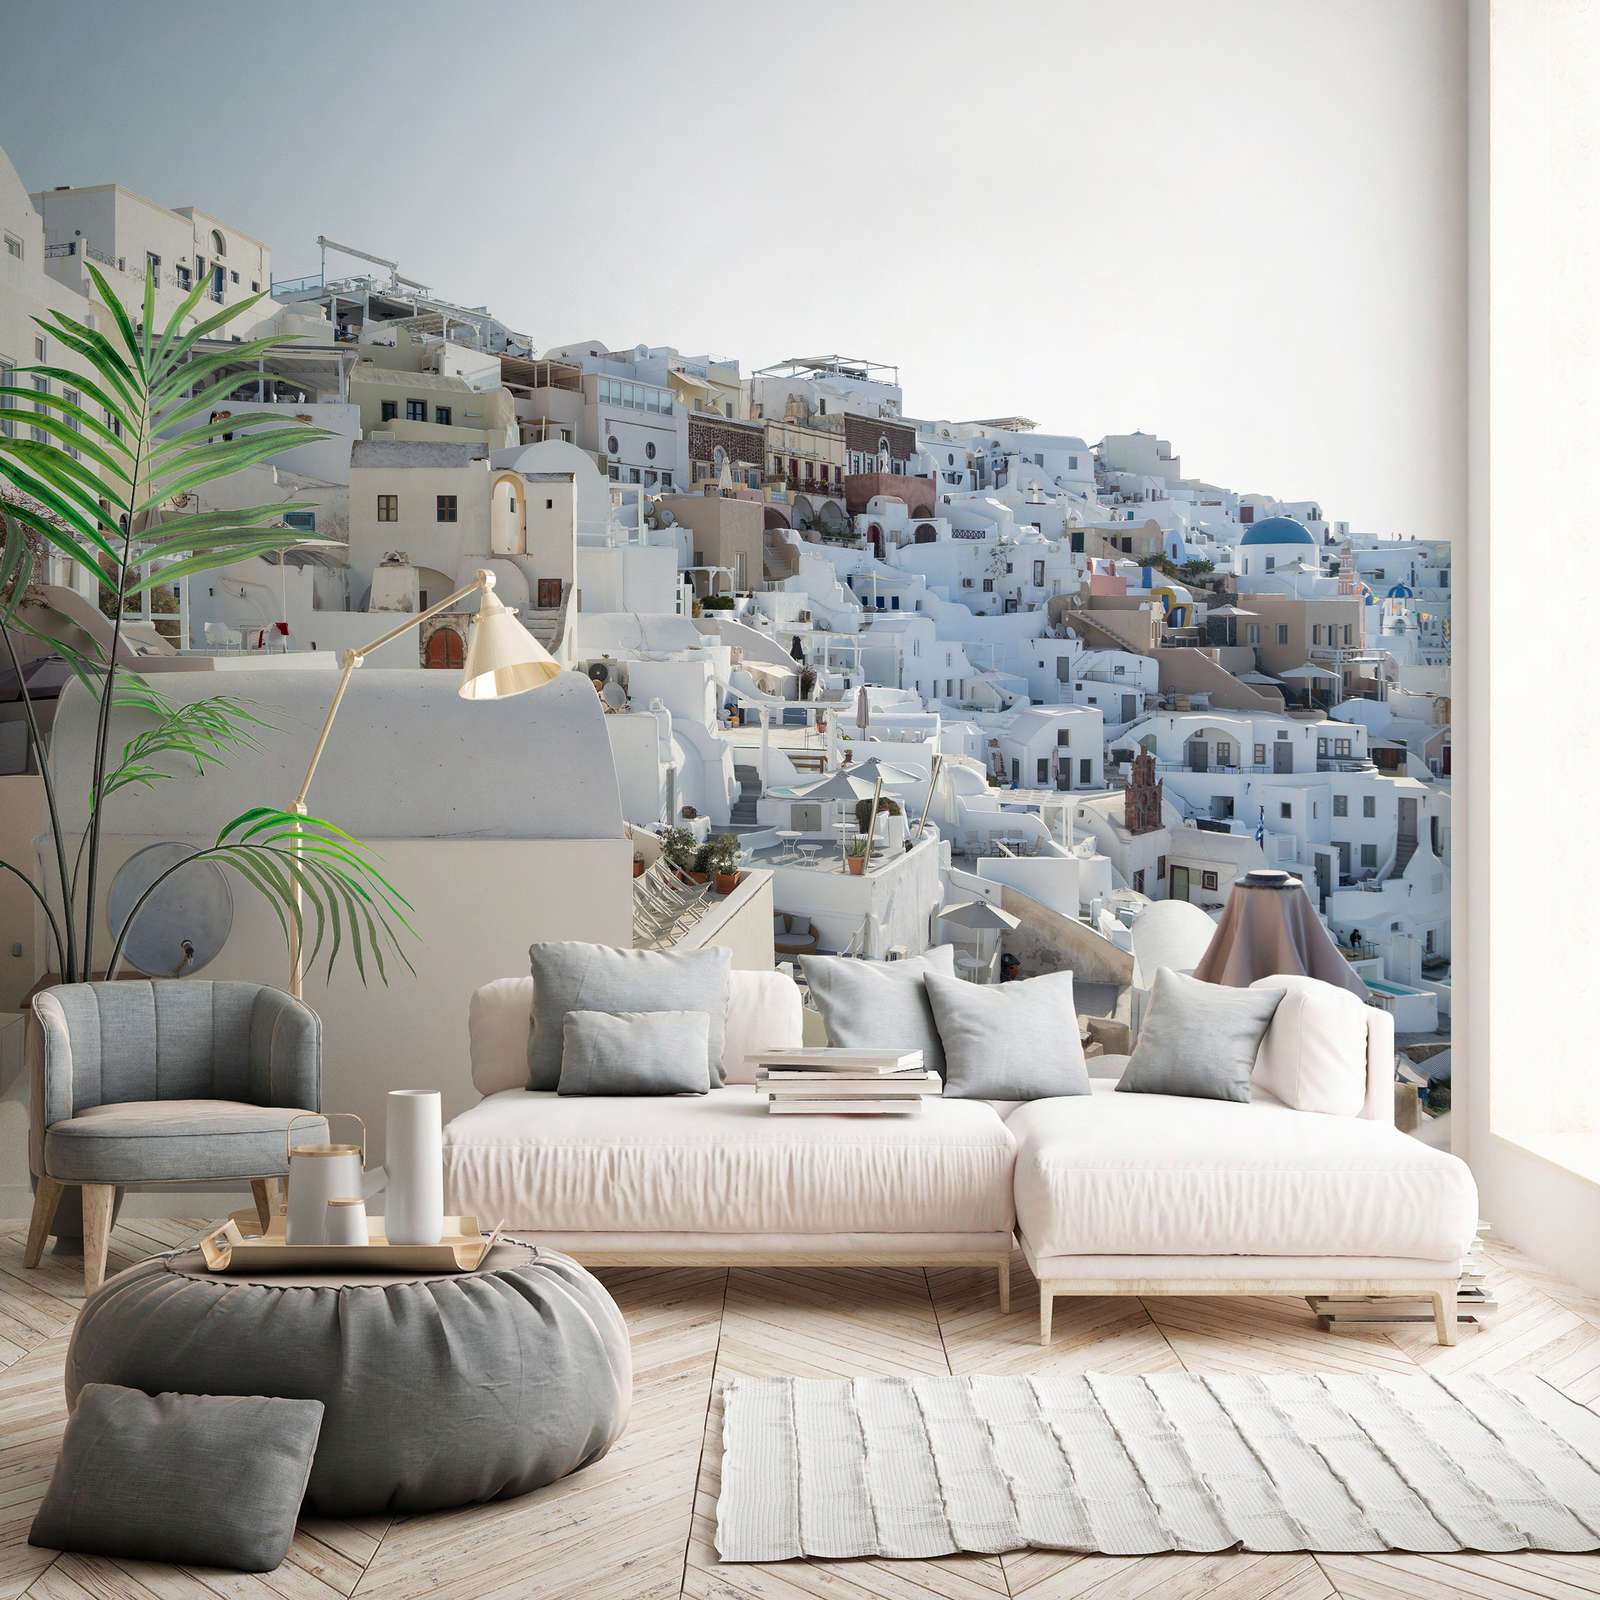             Photo wallpaper Santorini in the midday sun - Premium smooth fleece
        